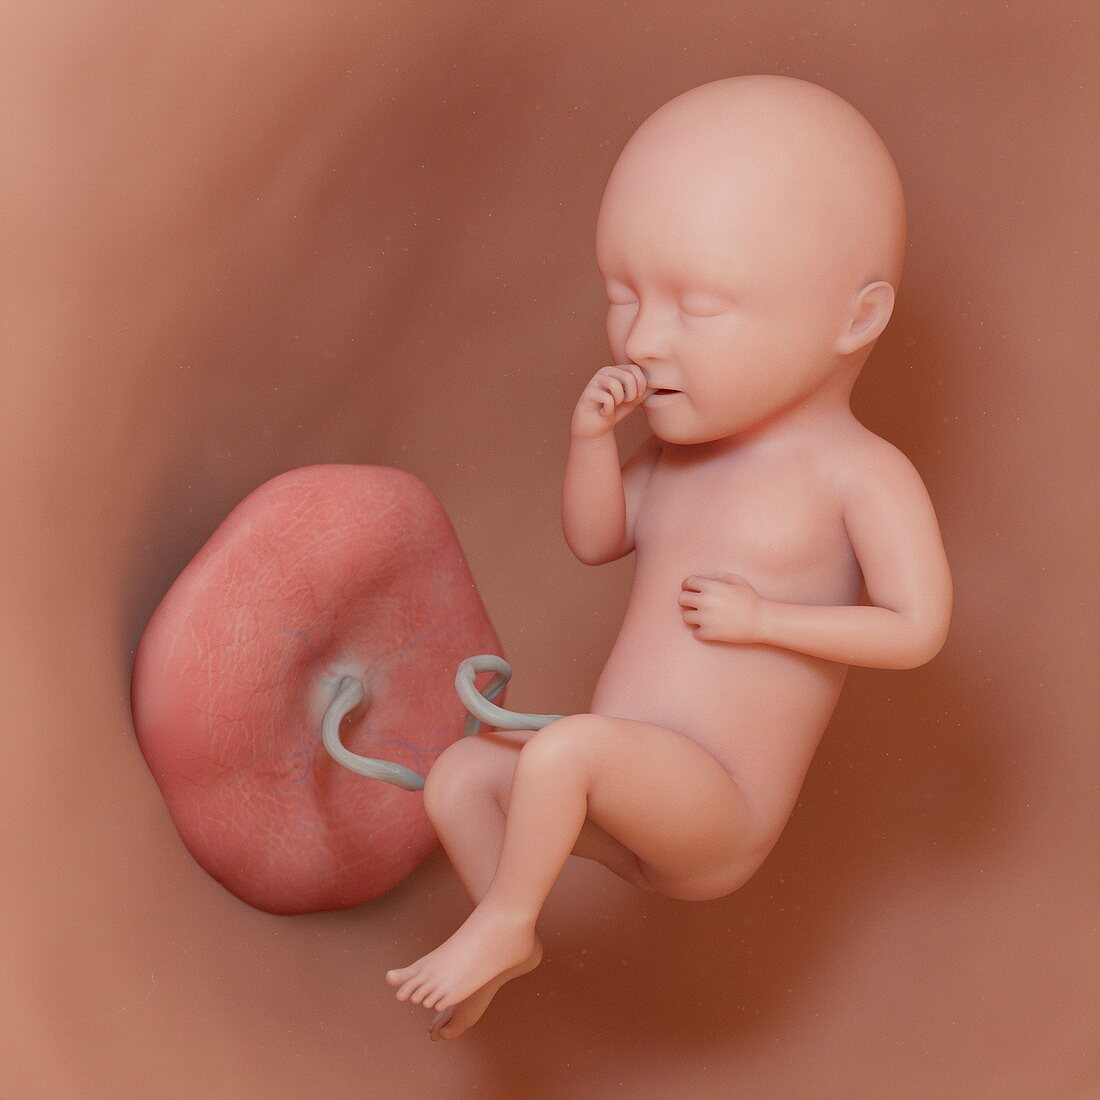 Fetus at week 34, illustration